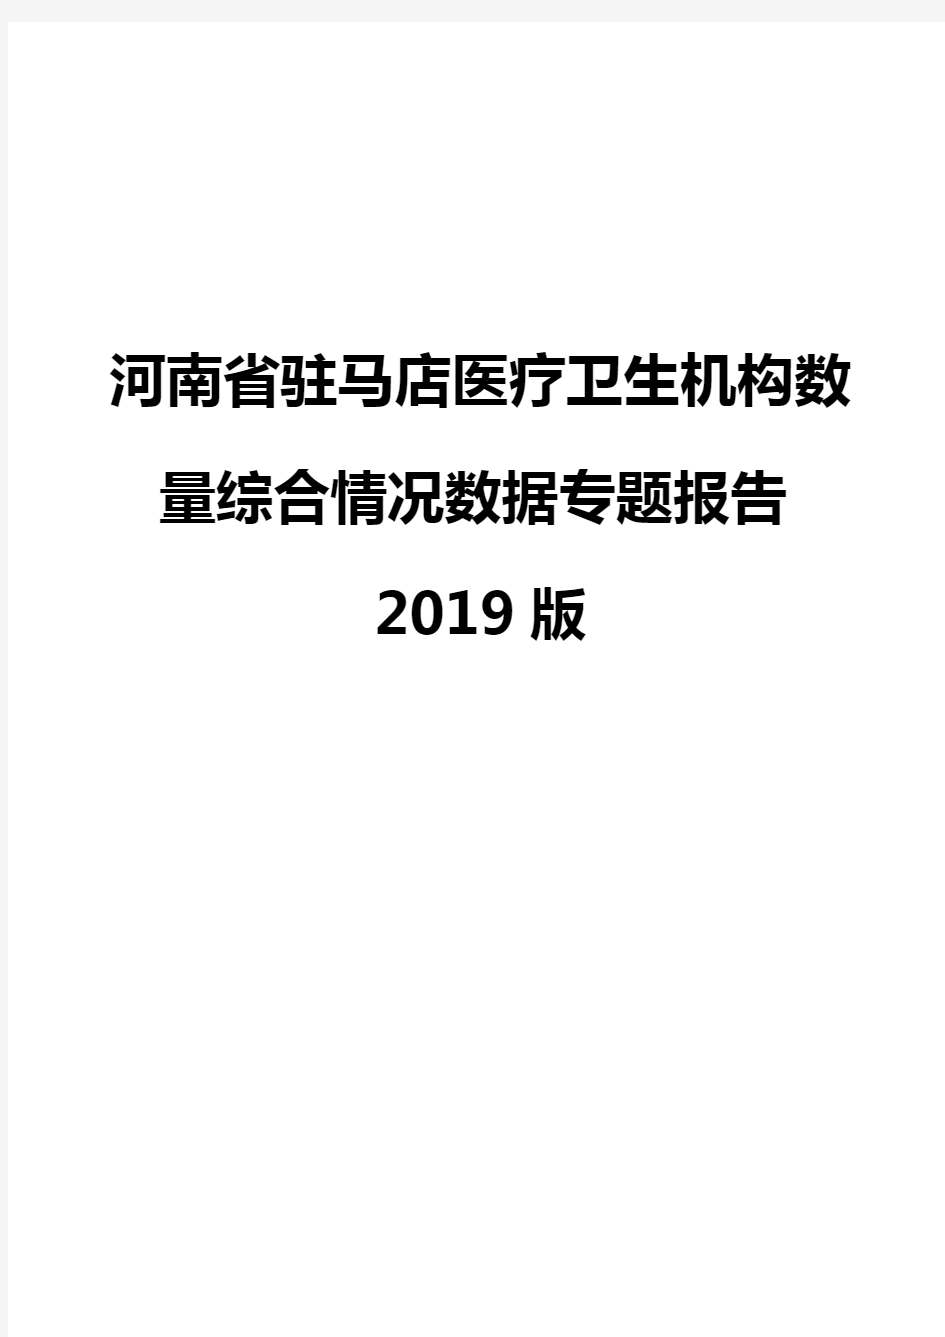 河南省驻马店医疗卫生机构数量综合情况数据专题报告2019版